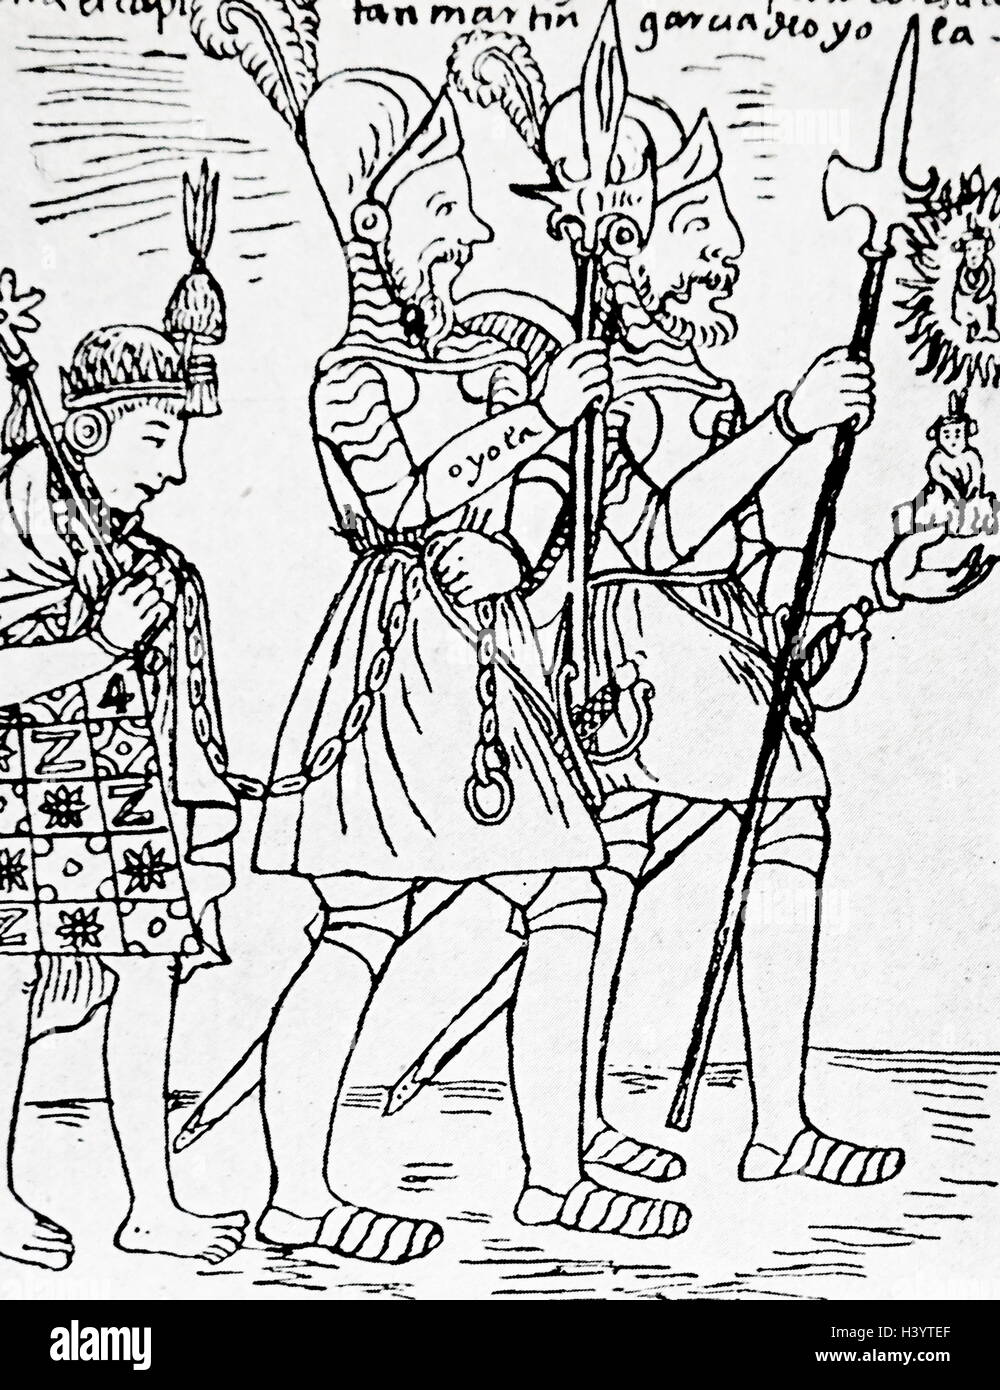 Dibujo del último rey Inca Túpac Amaru II (1545-1572), como un cautivo de los españoles por Felipe Guaman Poma de Ayala (1550-1616) un Quechua noble. Fecha del siglo XVI. Foto de stock